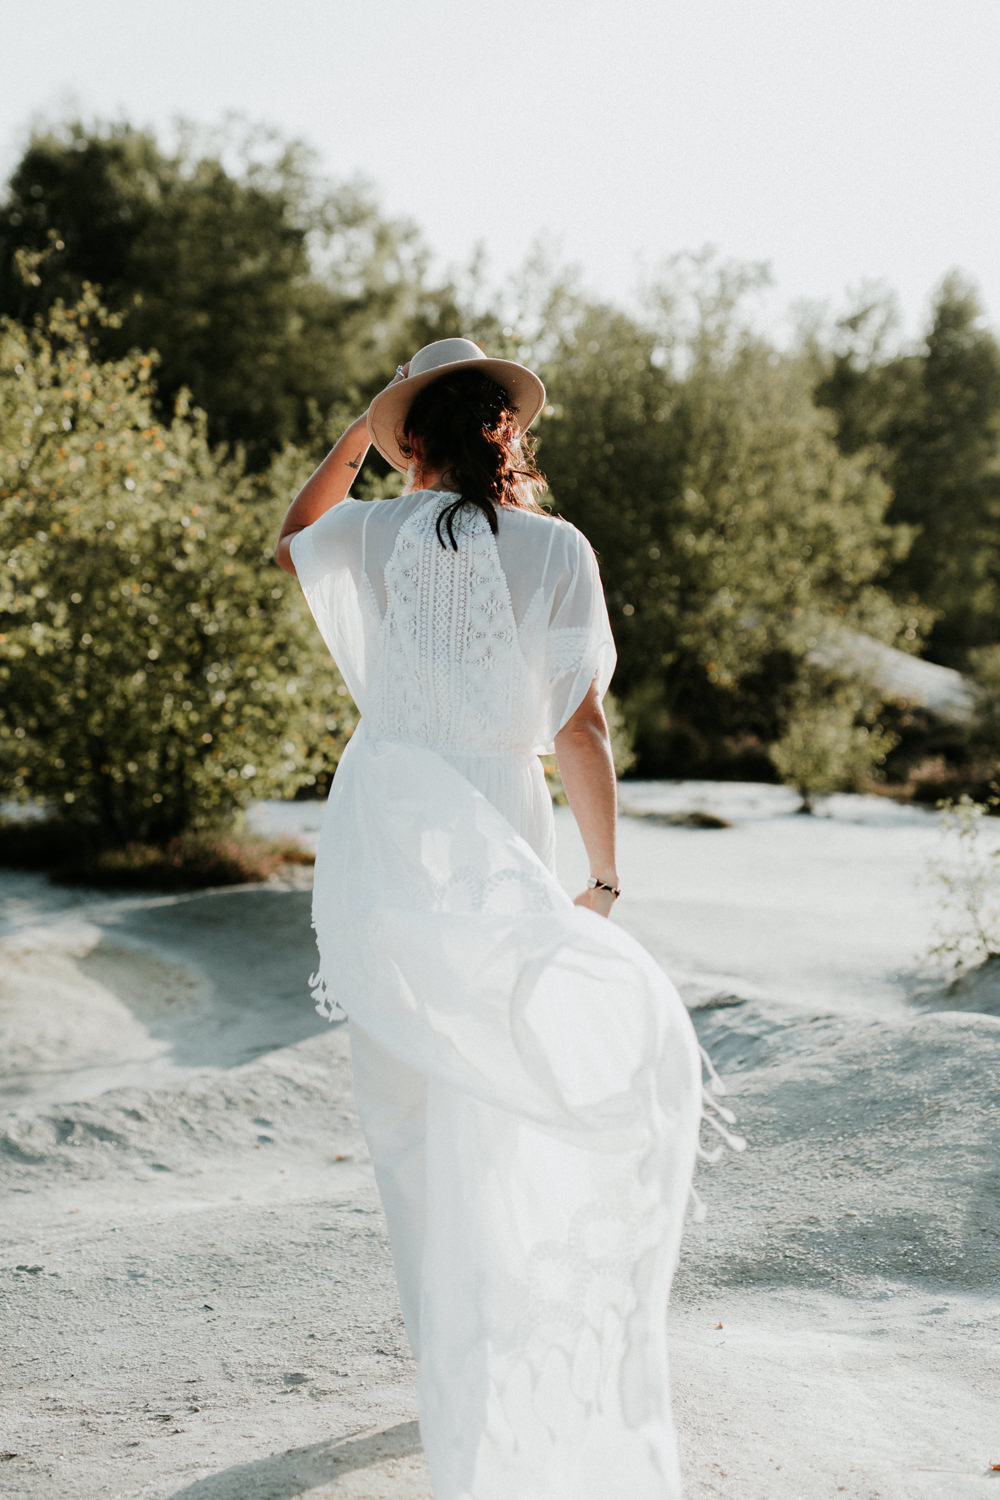 Atelier Être soie même collection 2020 - Robes de Mariée - Blog Mariage Madame C